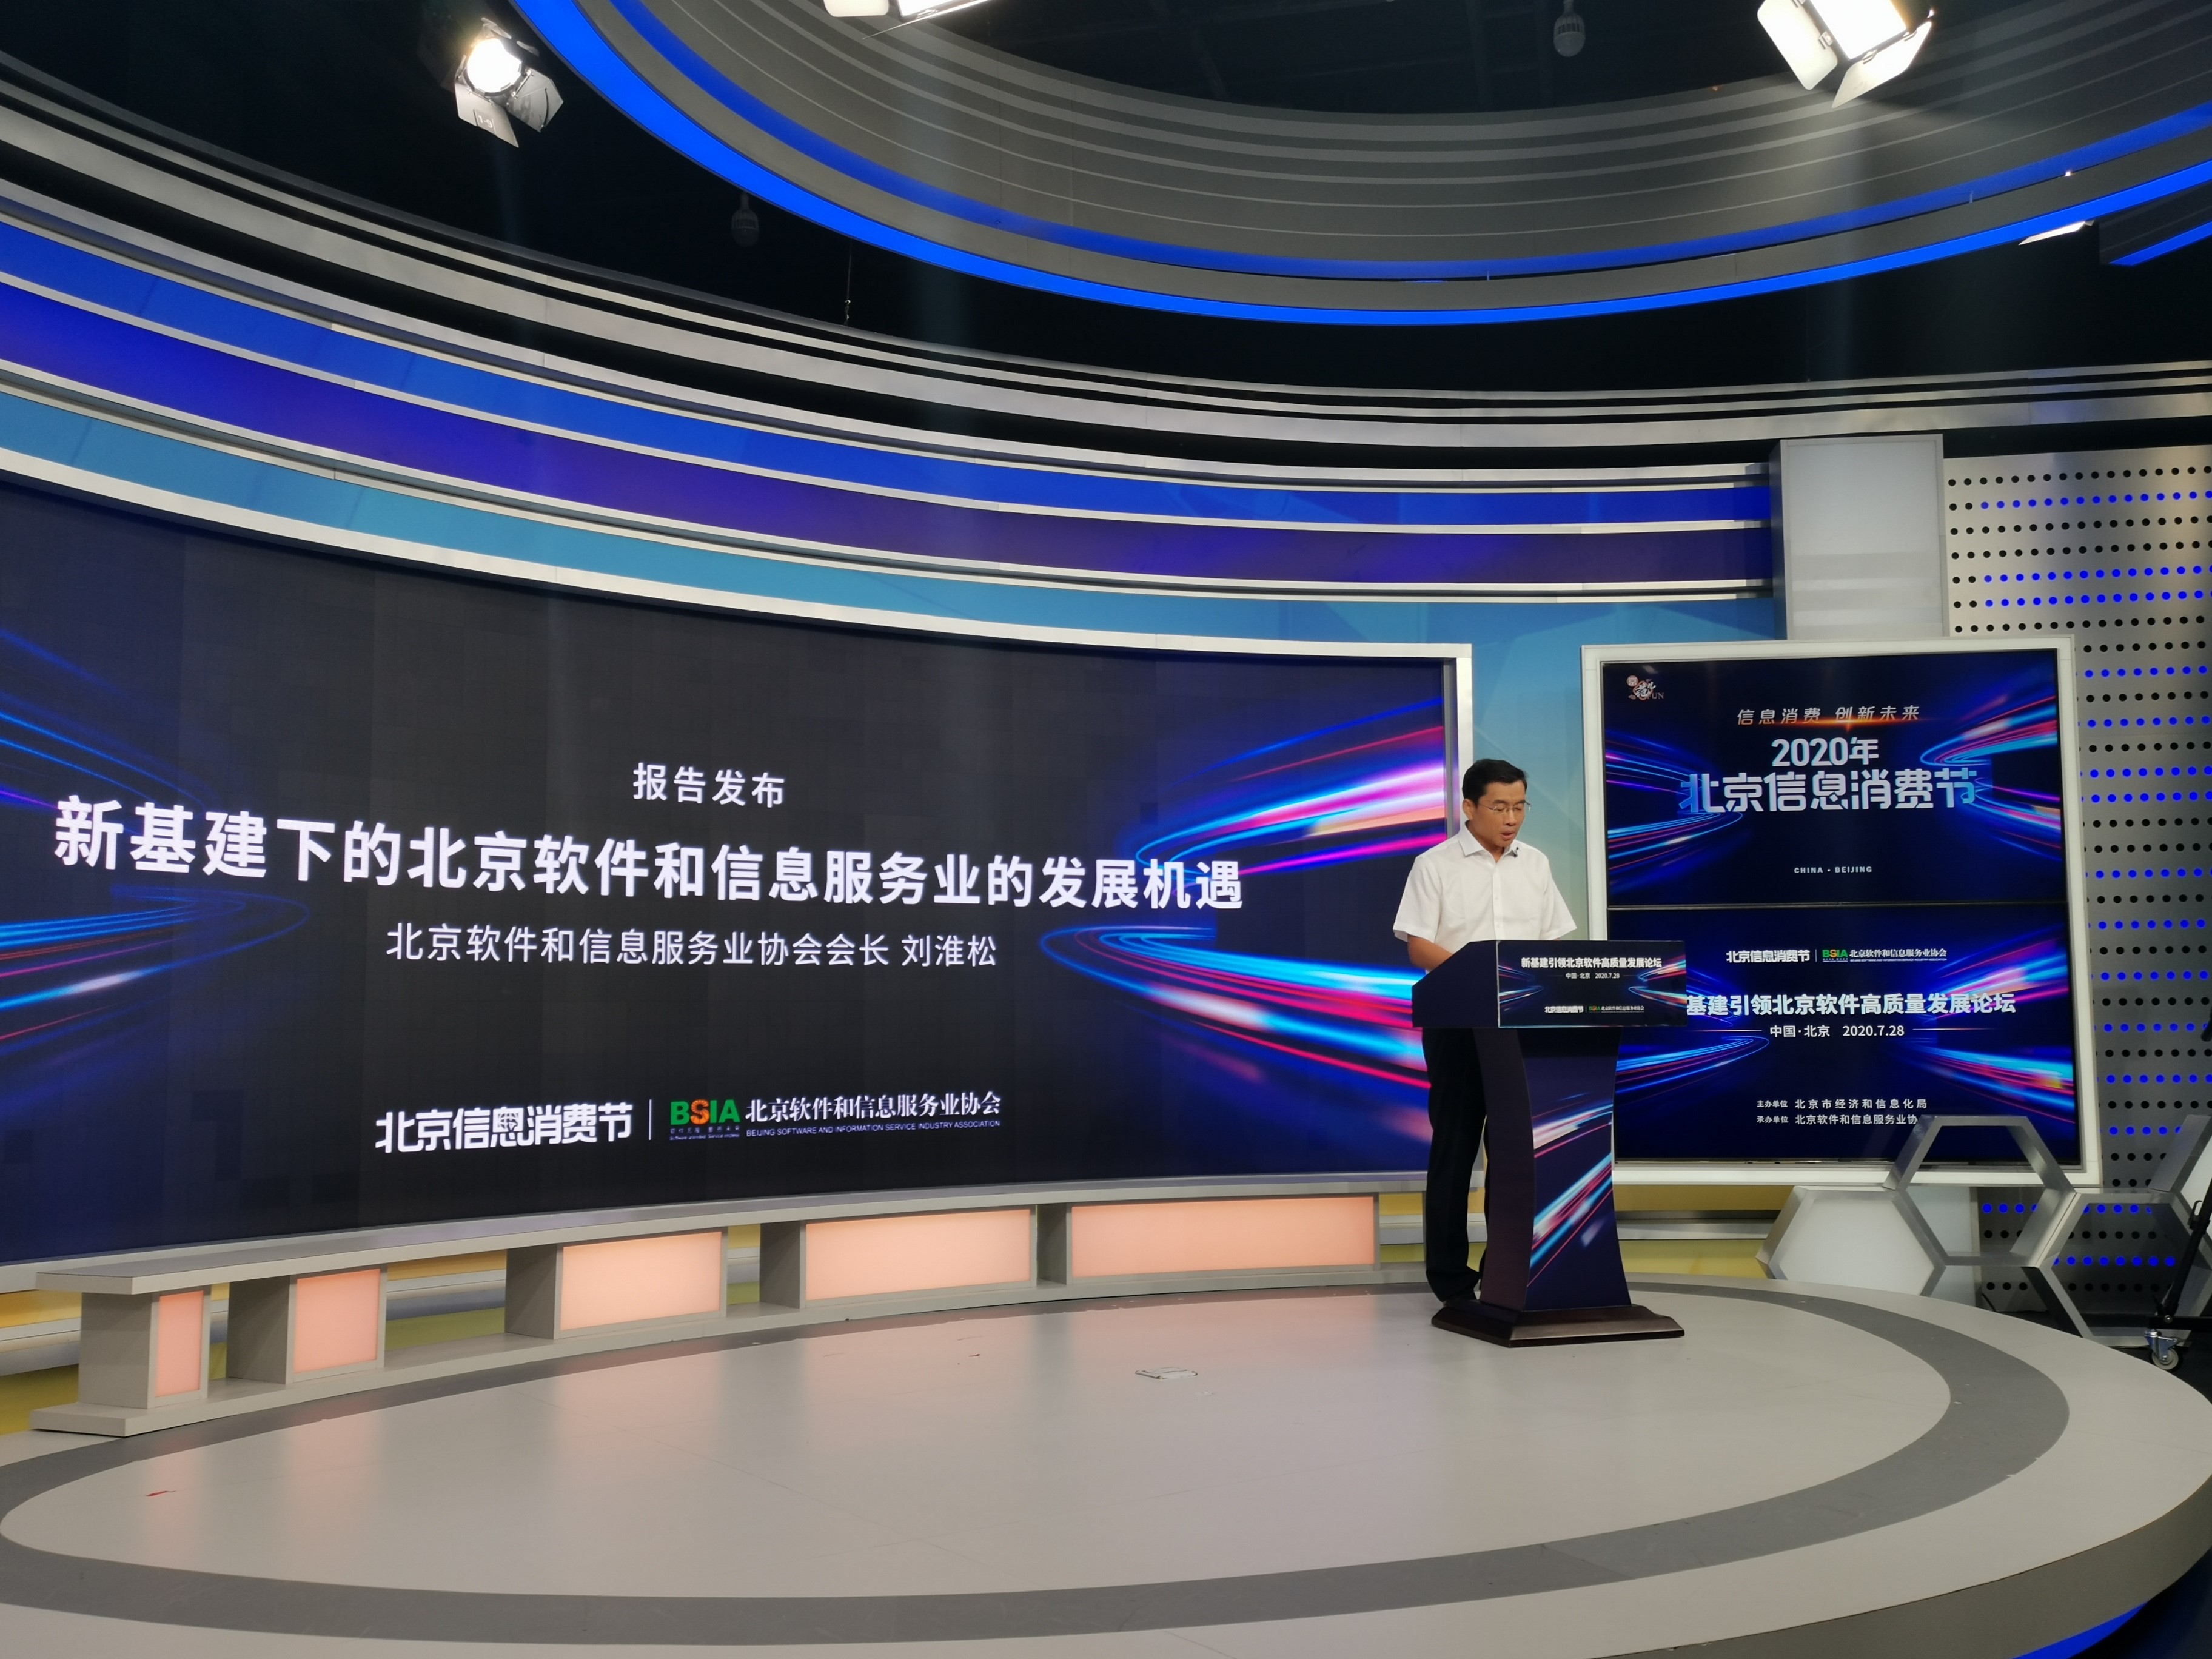 由赛智时代项目组编制的《新基建下的北京软件和信息服务业发展机遇》研究报告正式发布